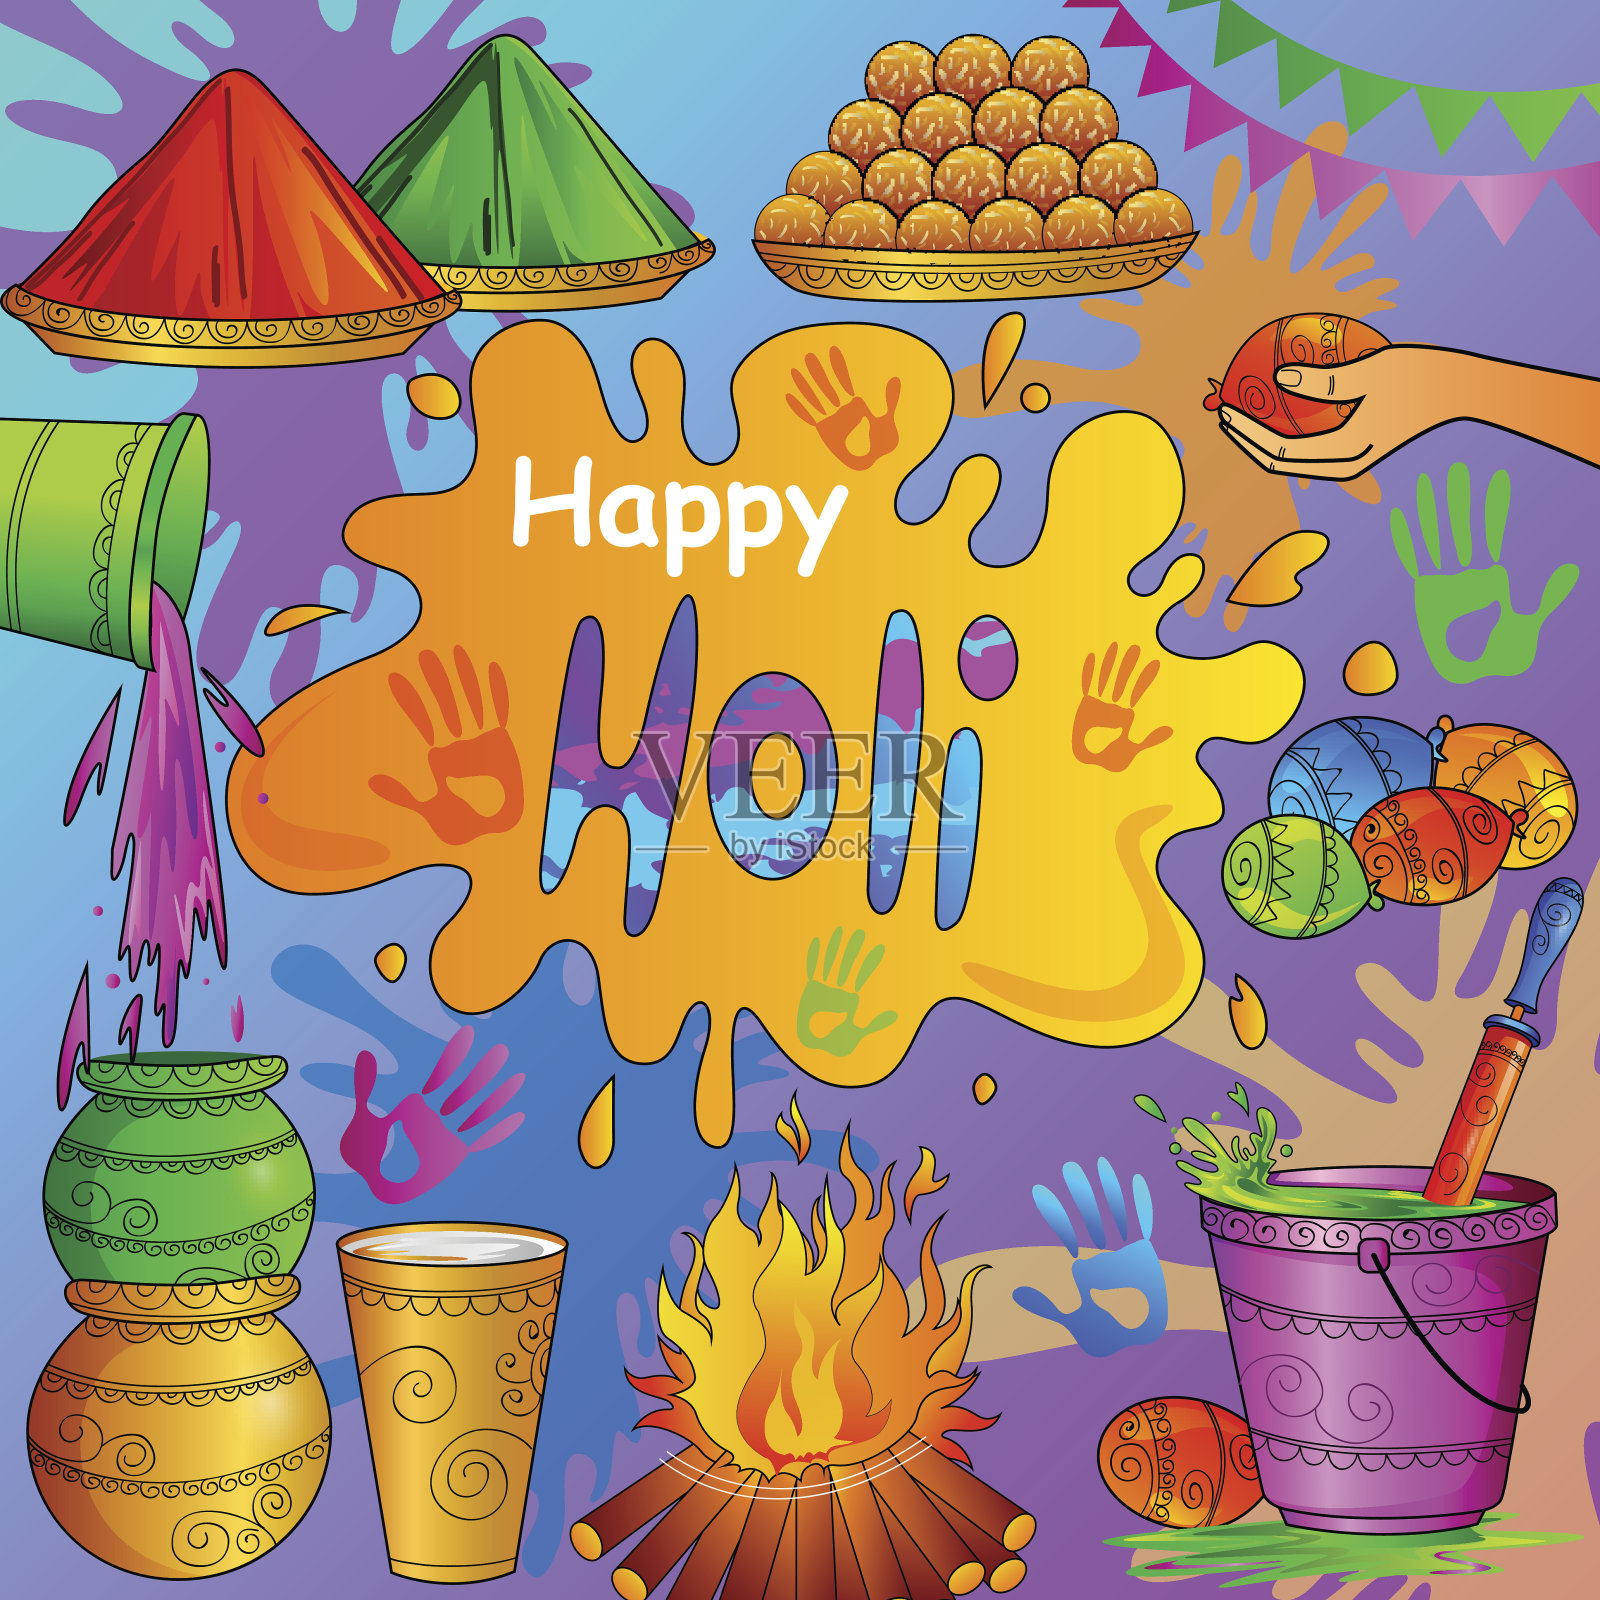 印度节日色彩快乐胡里节背景设计模板素材